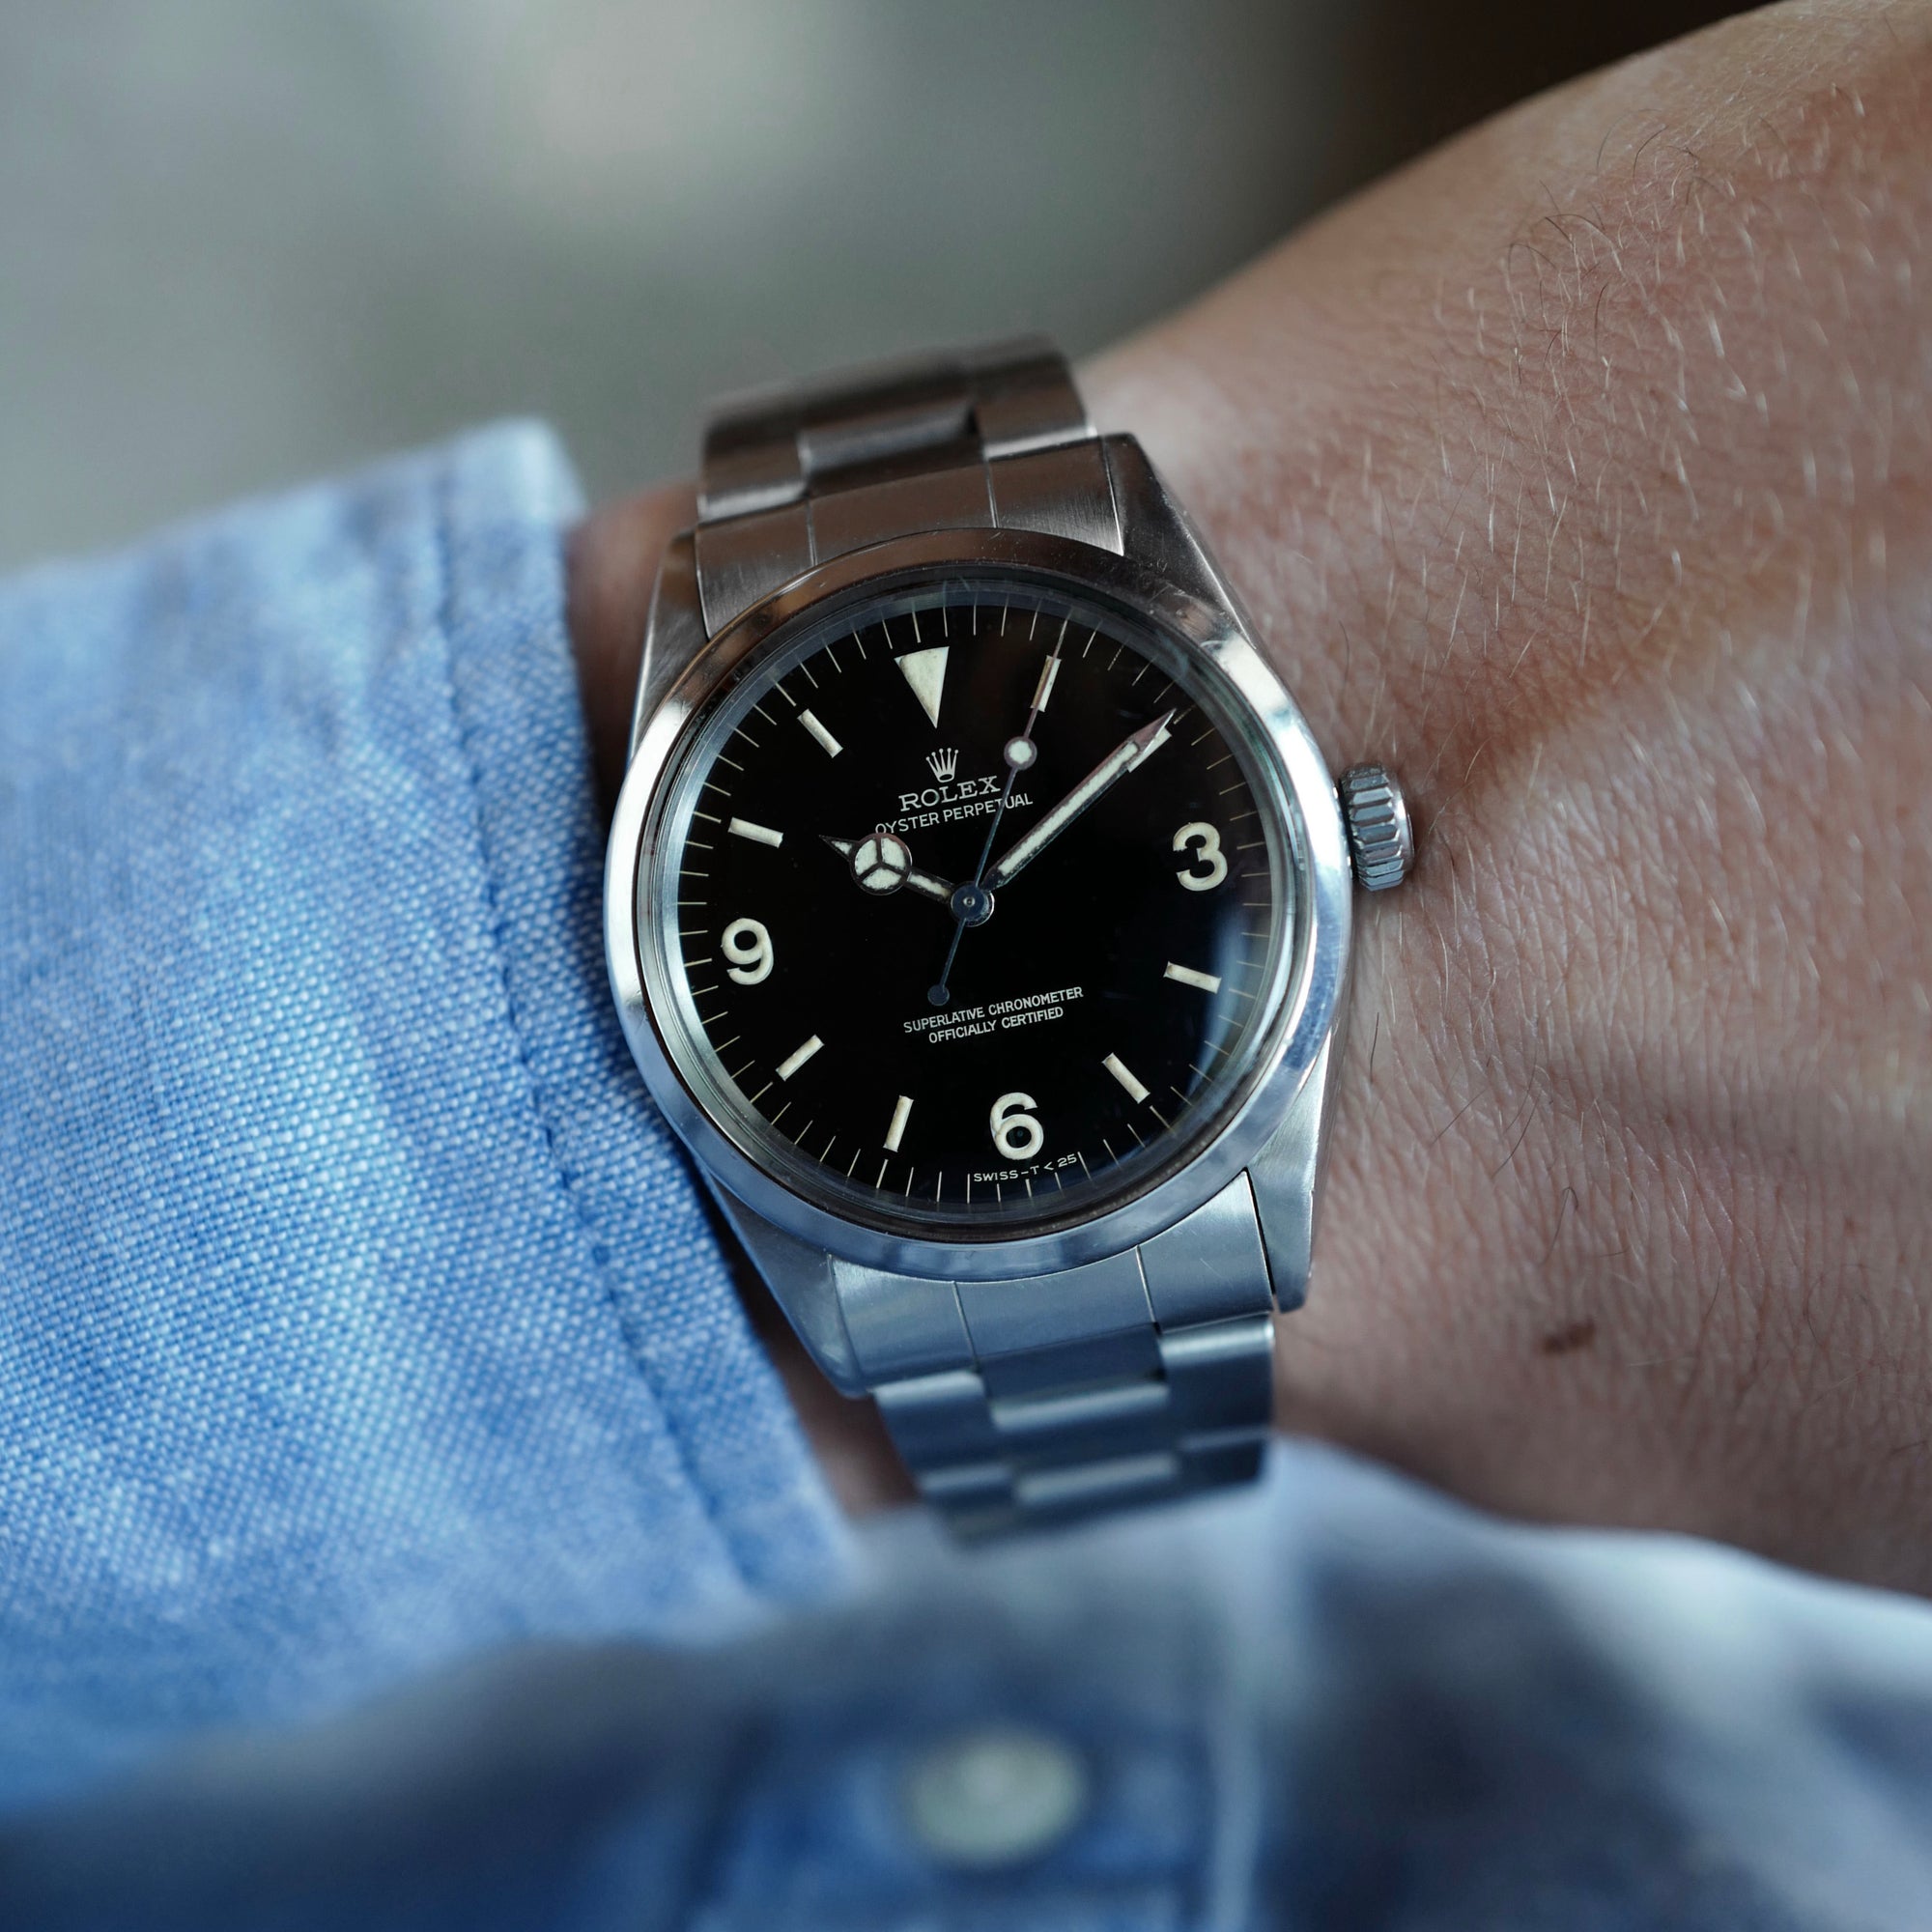 Rolex - Rolex Steel Gilt Dial Explorer Ref. 1016 - The Keystone Watches